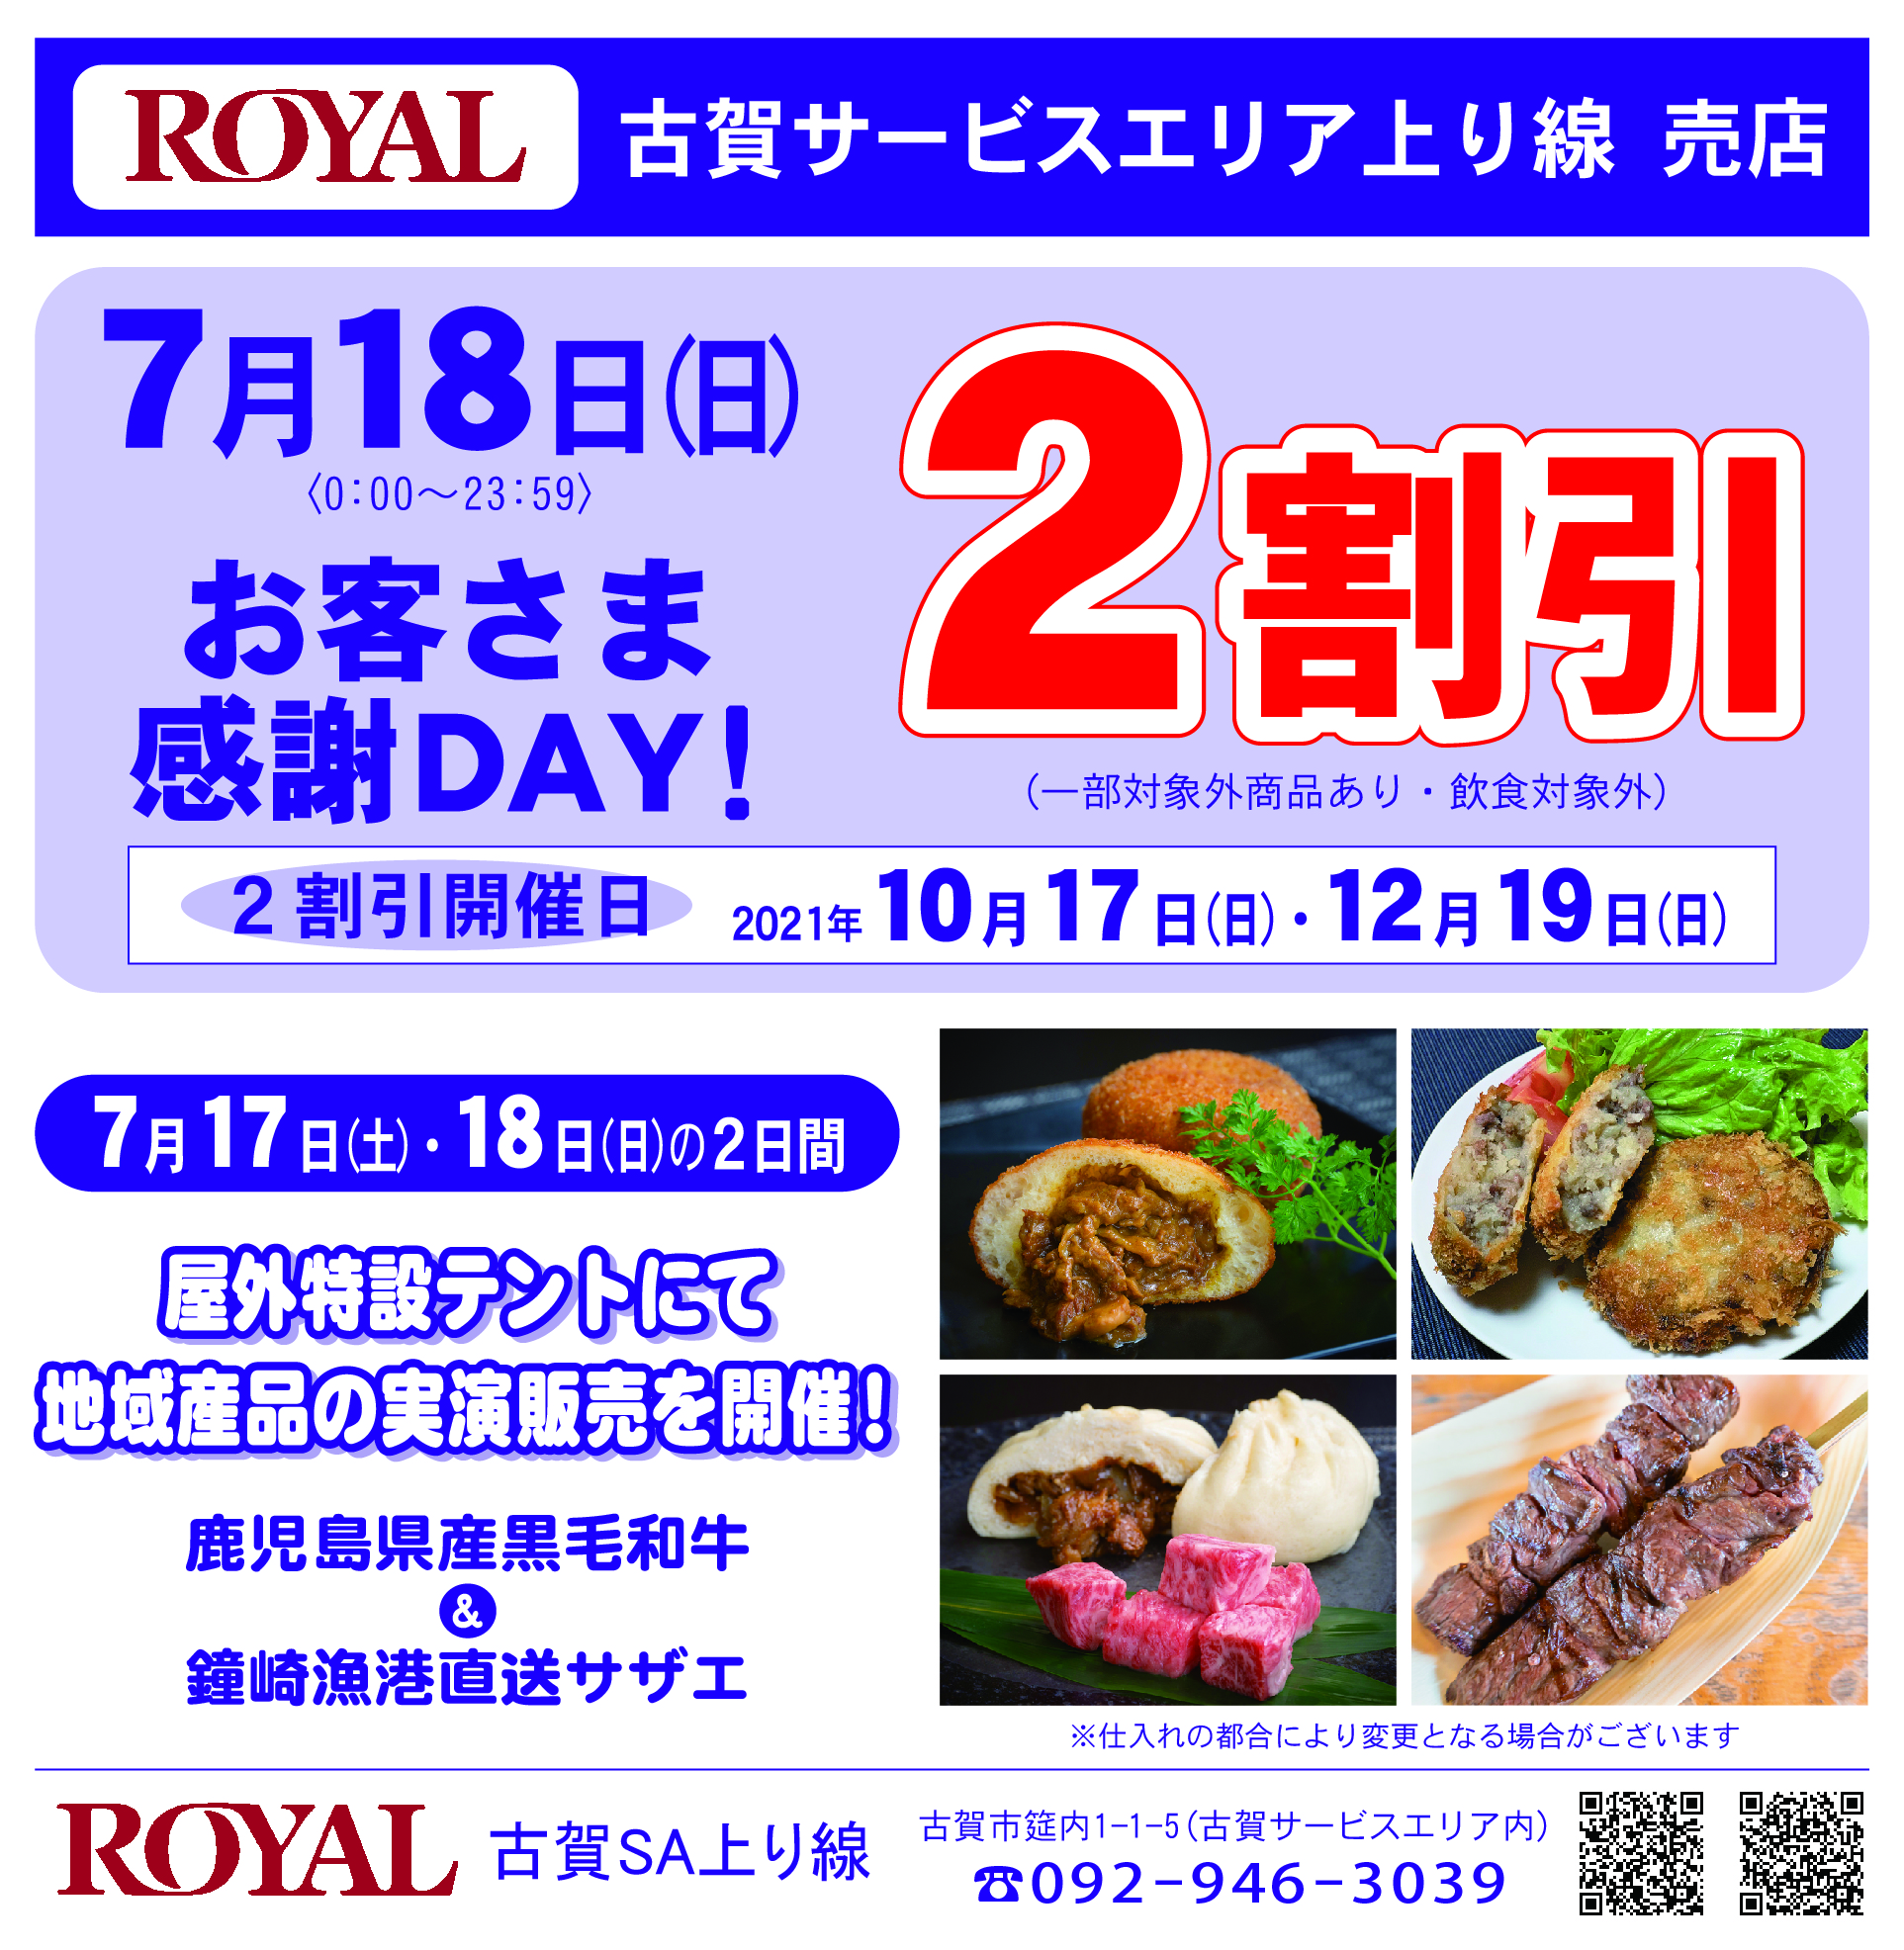 ロイヤル古賀サービスエリア店7-4